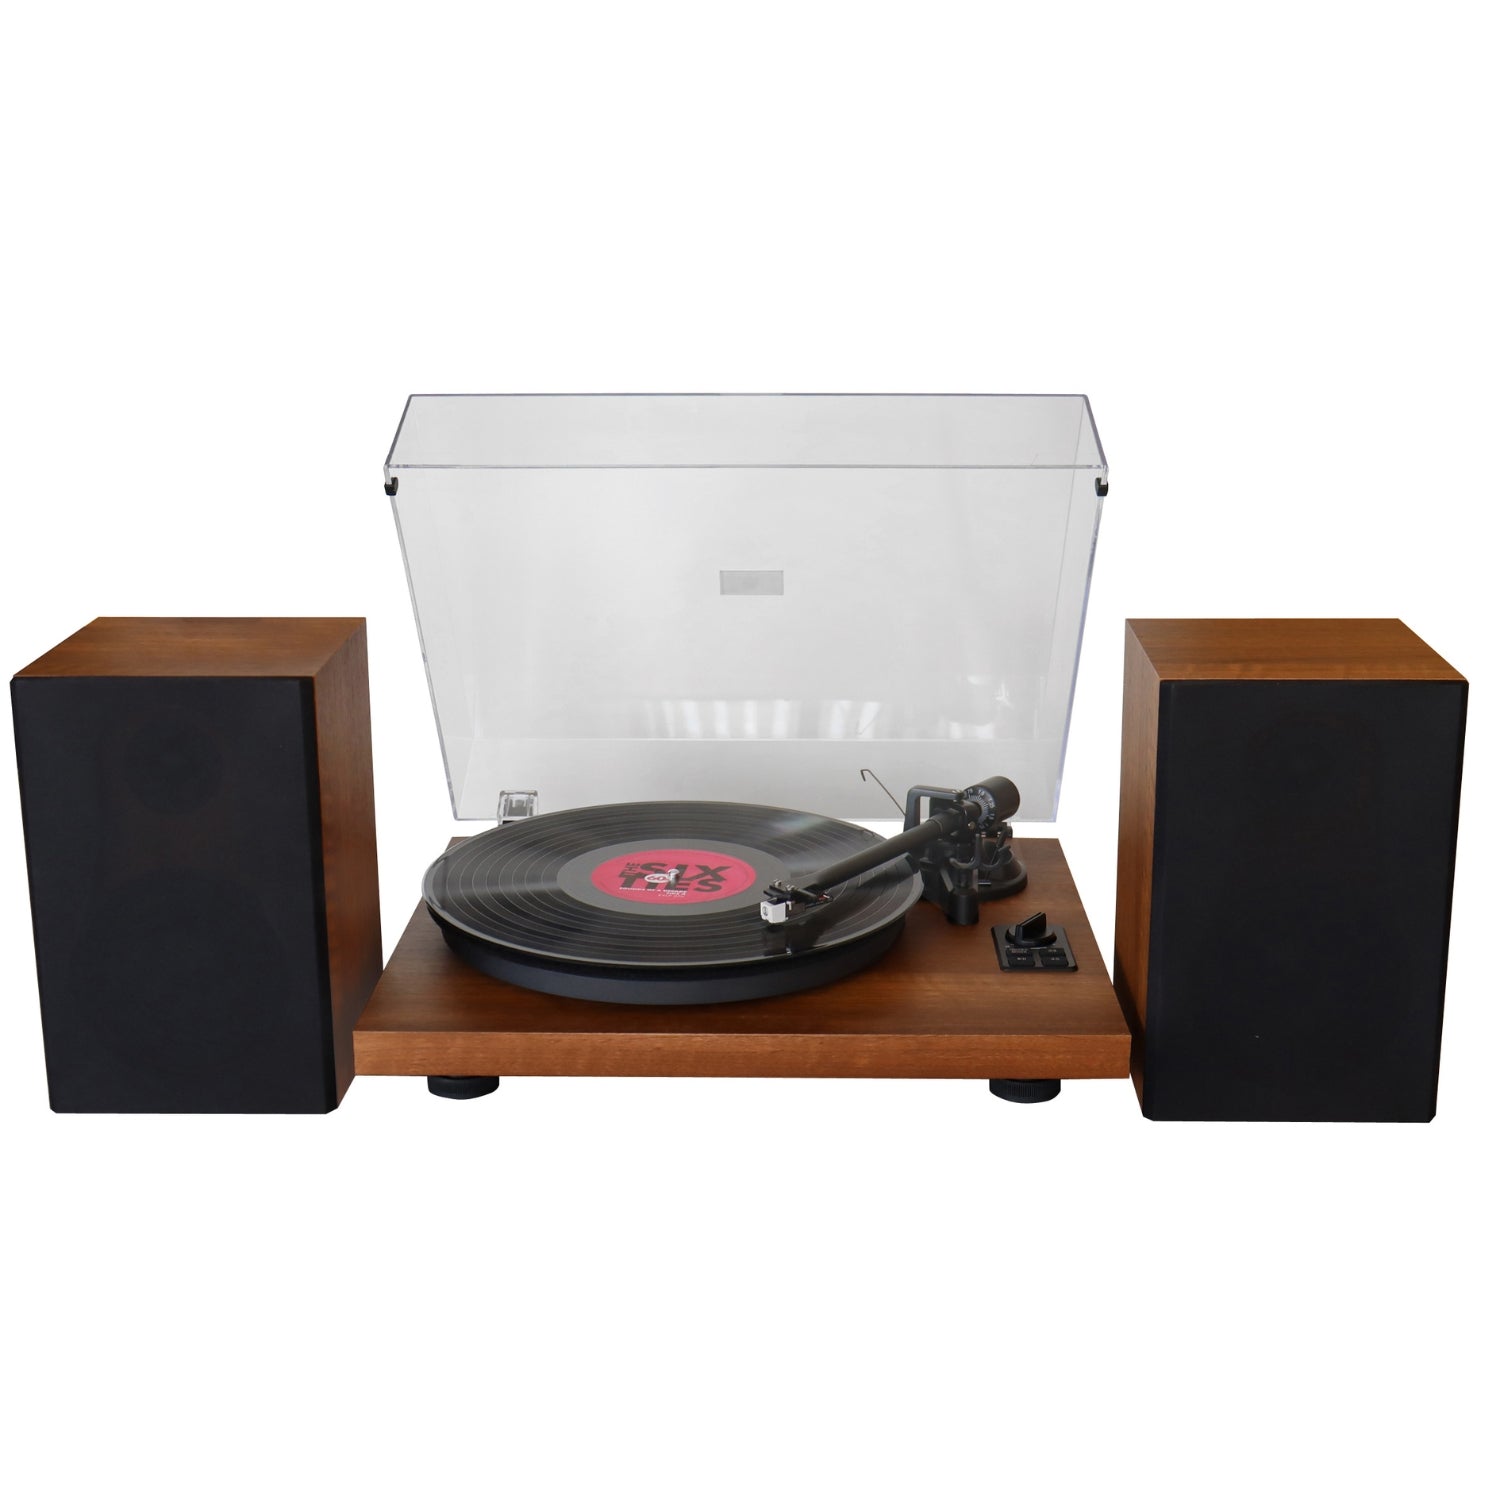 Soundmaster EliteLine PL711 platine vinyle en bois Audio Technica Bluetooth encodage PC haut-parleur bass reflex 2 voies